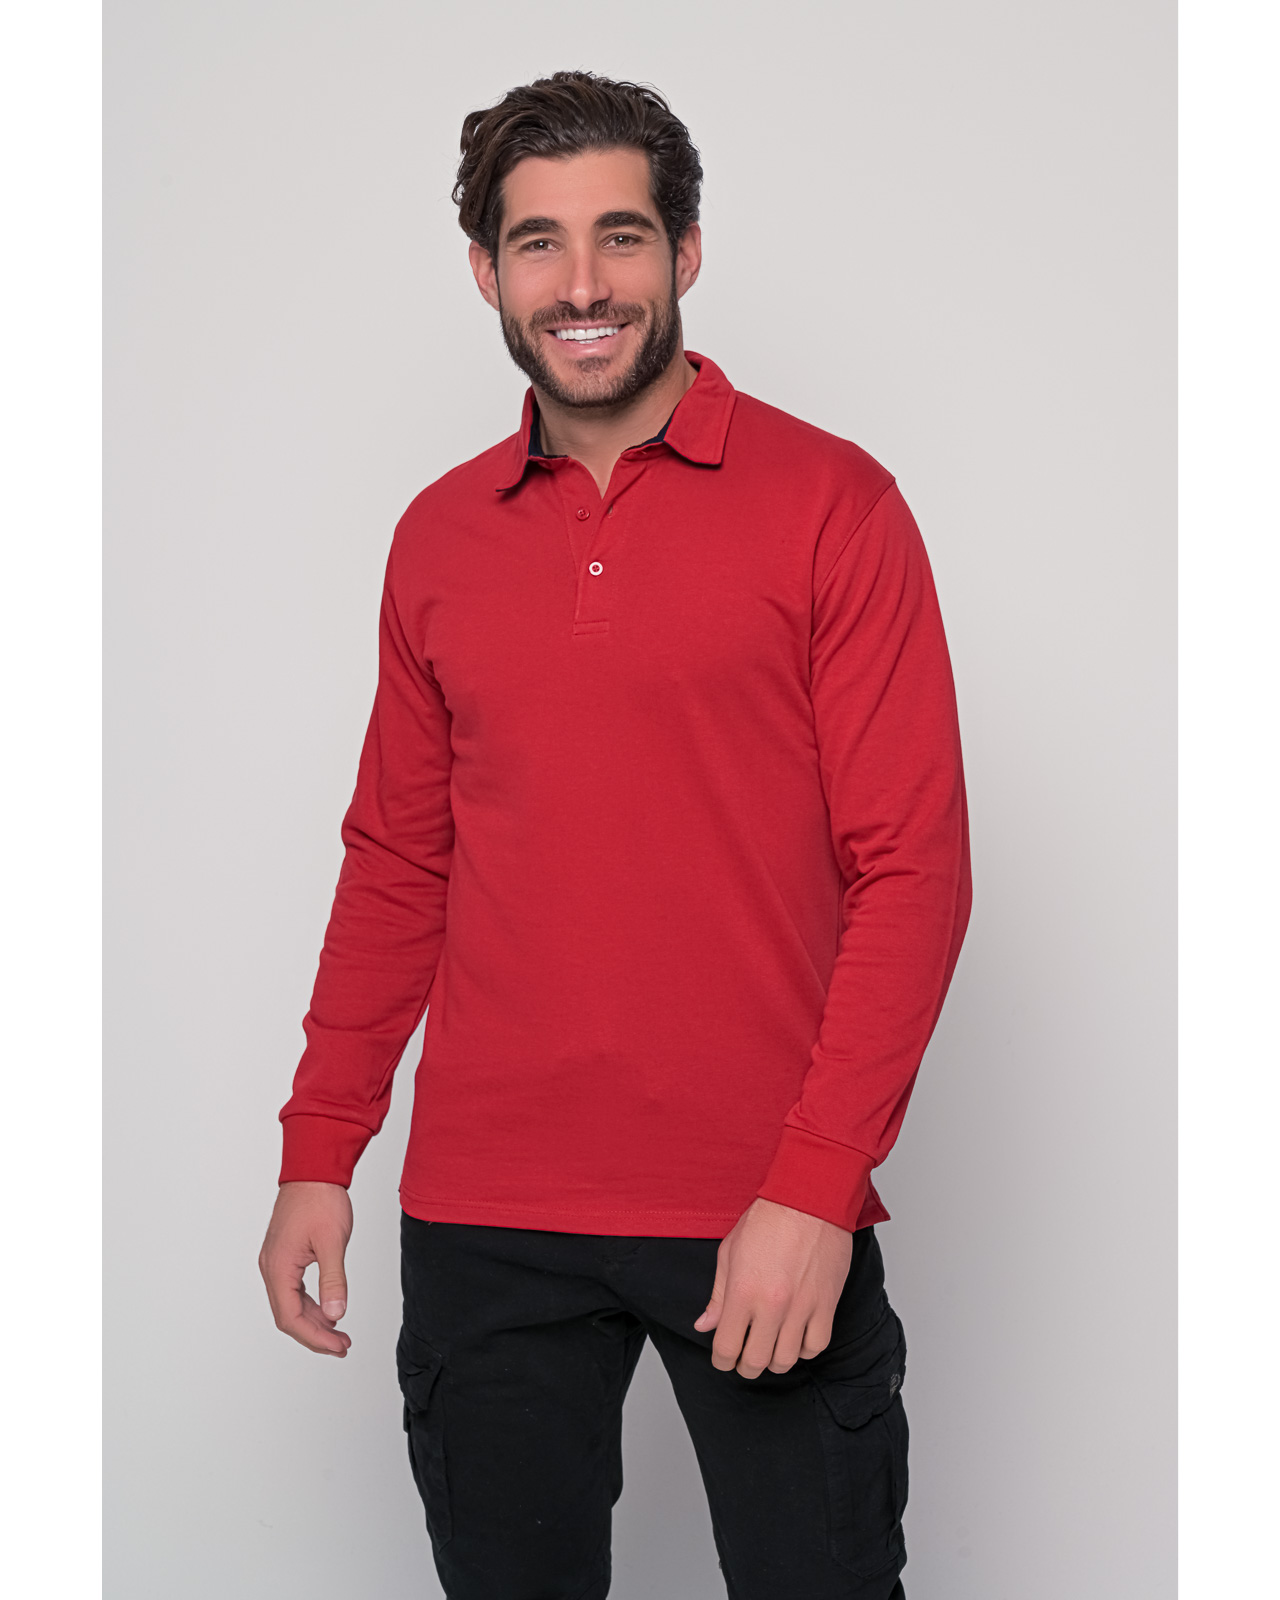 Ανδρικό φούτερ κόκκινο τύπου Polo | Metropolis Fashion City